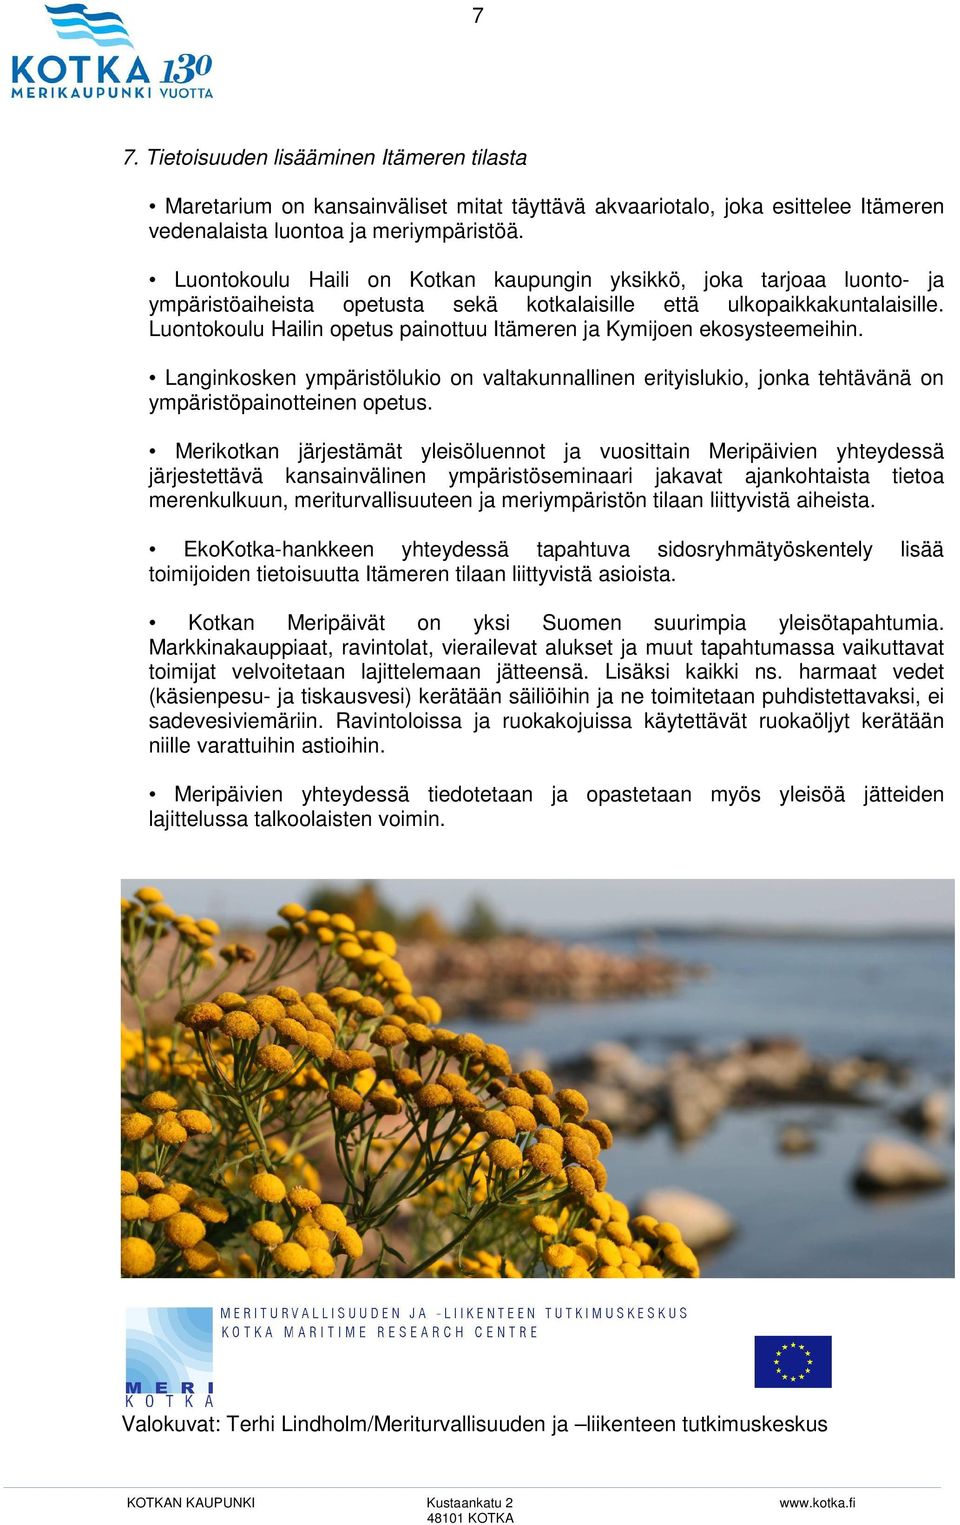 Luontokoulu Hailin opetus painottuu Itämeren ja Kymijoen ekosysteemeihin. Langinkosken ympäristölukio on valtakunnallinen erityislukio, jonka tehtävänä on ympäristöpainotteinen opetus.